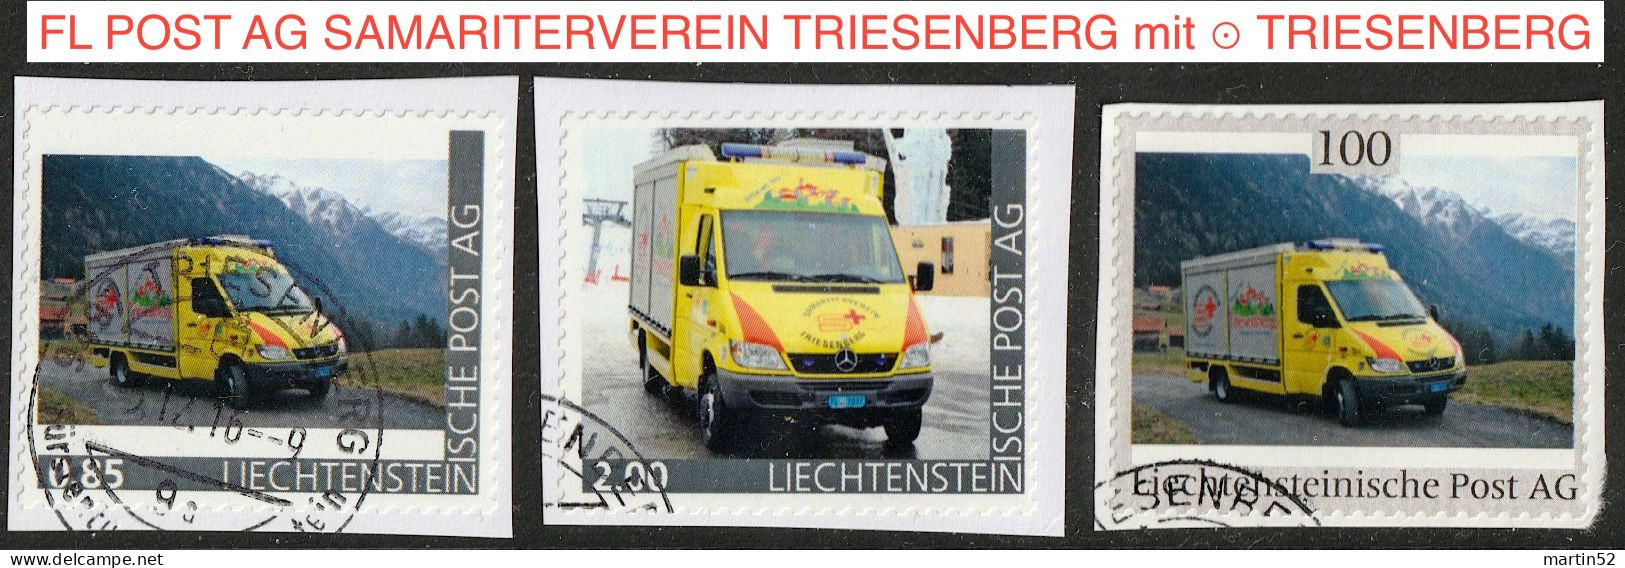 Liechtenstein 2016: Ausgabe Der FL POST AG "SAMARITERVEREIN TRIESENBERG" (Rettungs-Bus) Mit ⊙ Von TRIESENBERG - Errors & Oddities